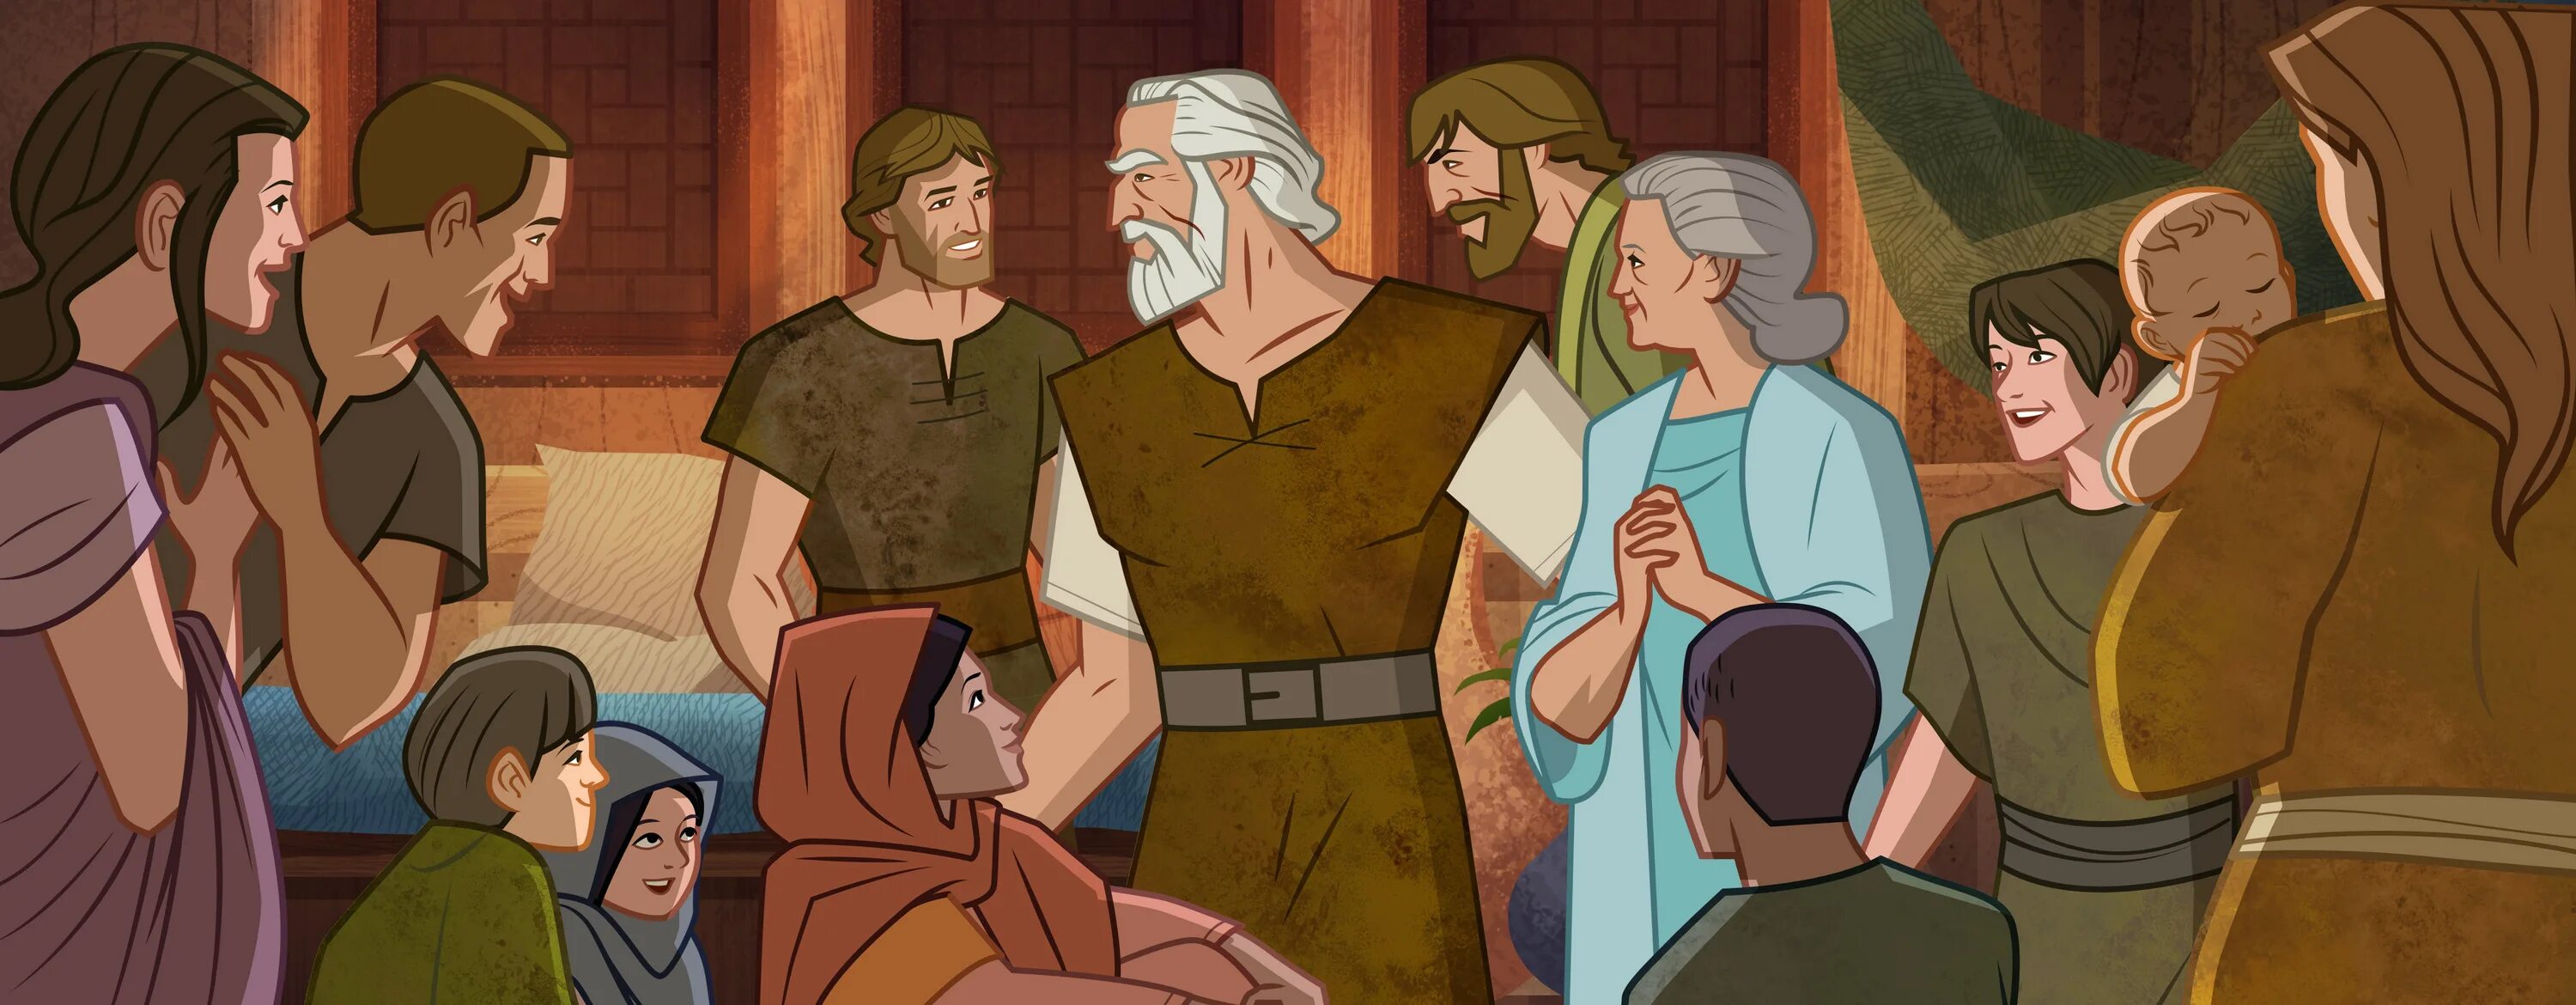 Ной кон. Ной и его семья. Семья ноя Ковчег. Ной и его сыновья. Праведный Ной и его семейство.